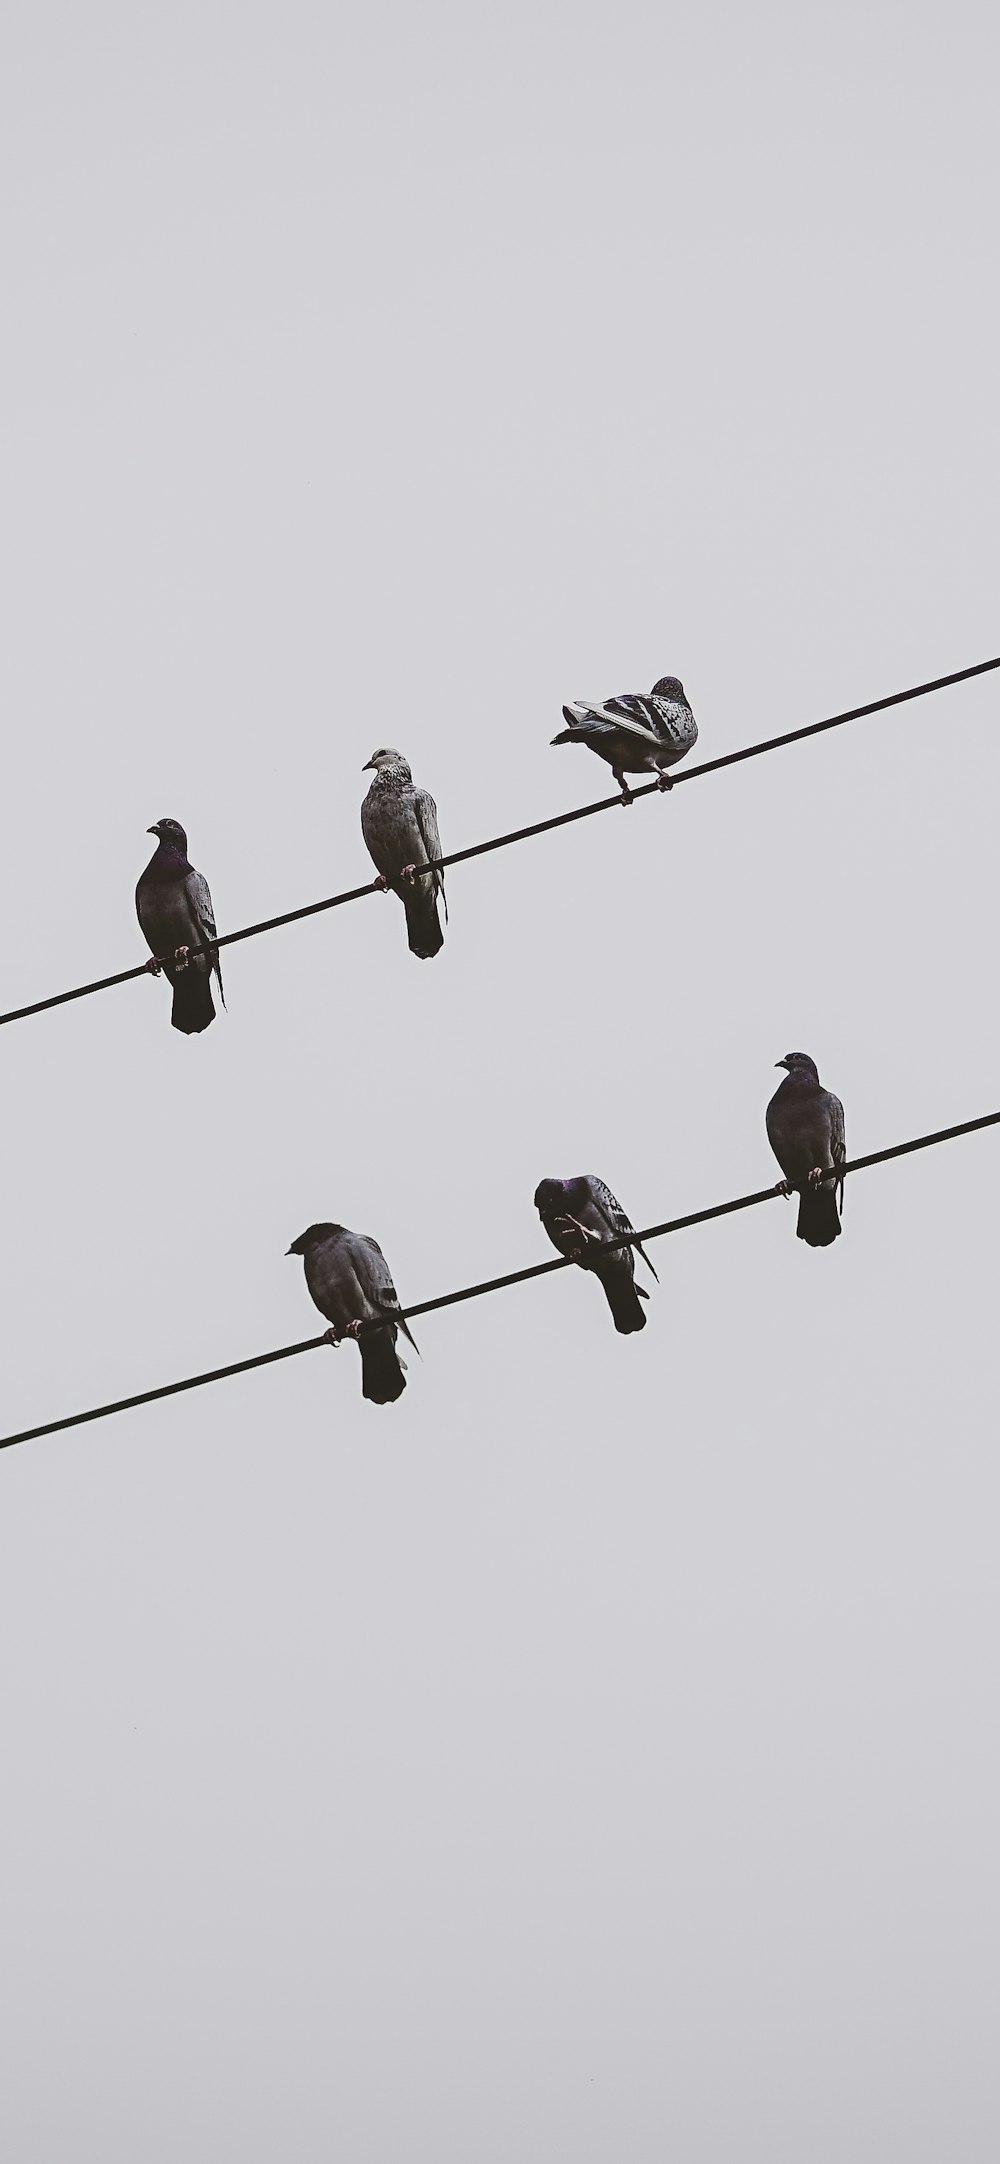 Uno stormo di uccelli seduti in cima alle linee elettriche